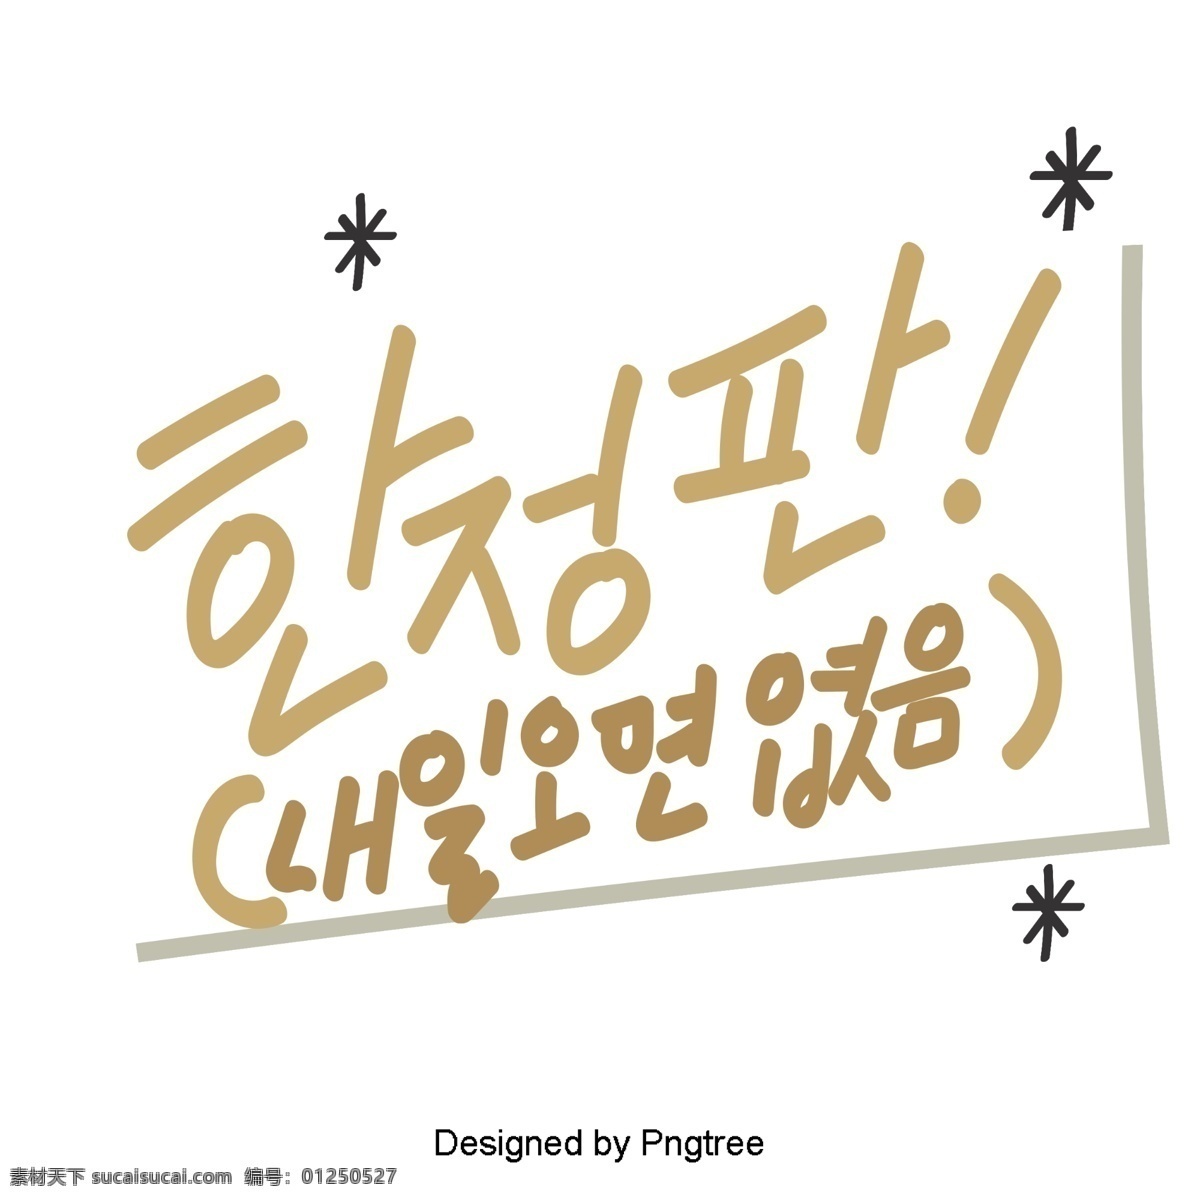 韩国 风格 限量 版 可爱 的卡 通 元素 每天 手 种 字体 对话 whisperwind 消息板 卡通 字体限量版 移动支付